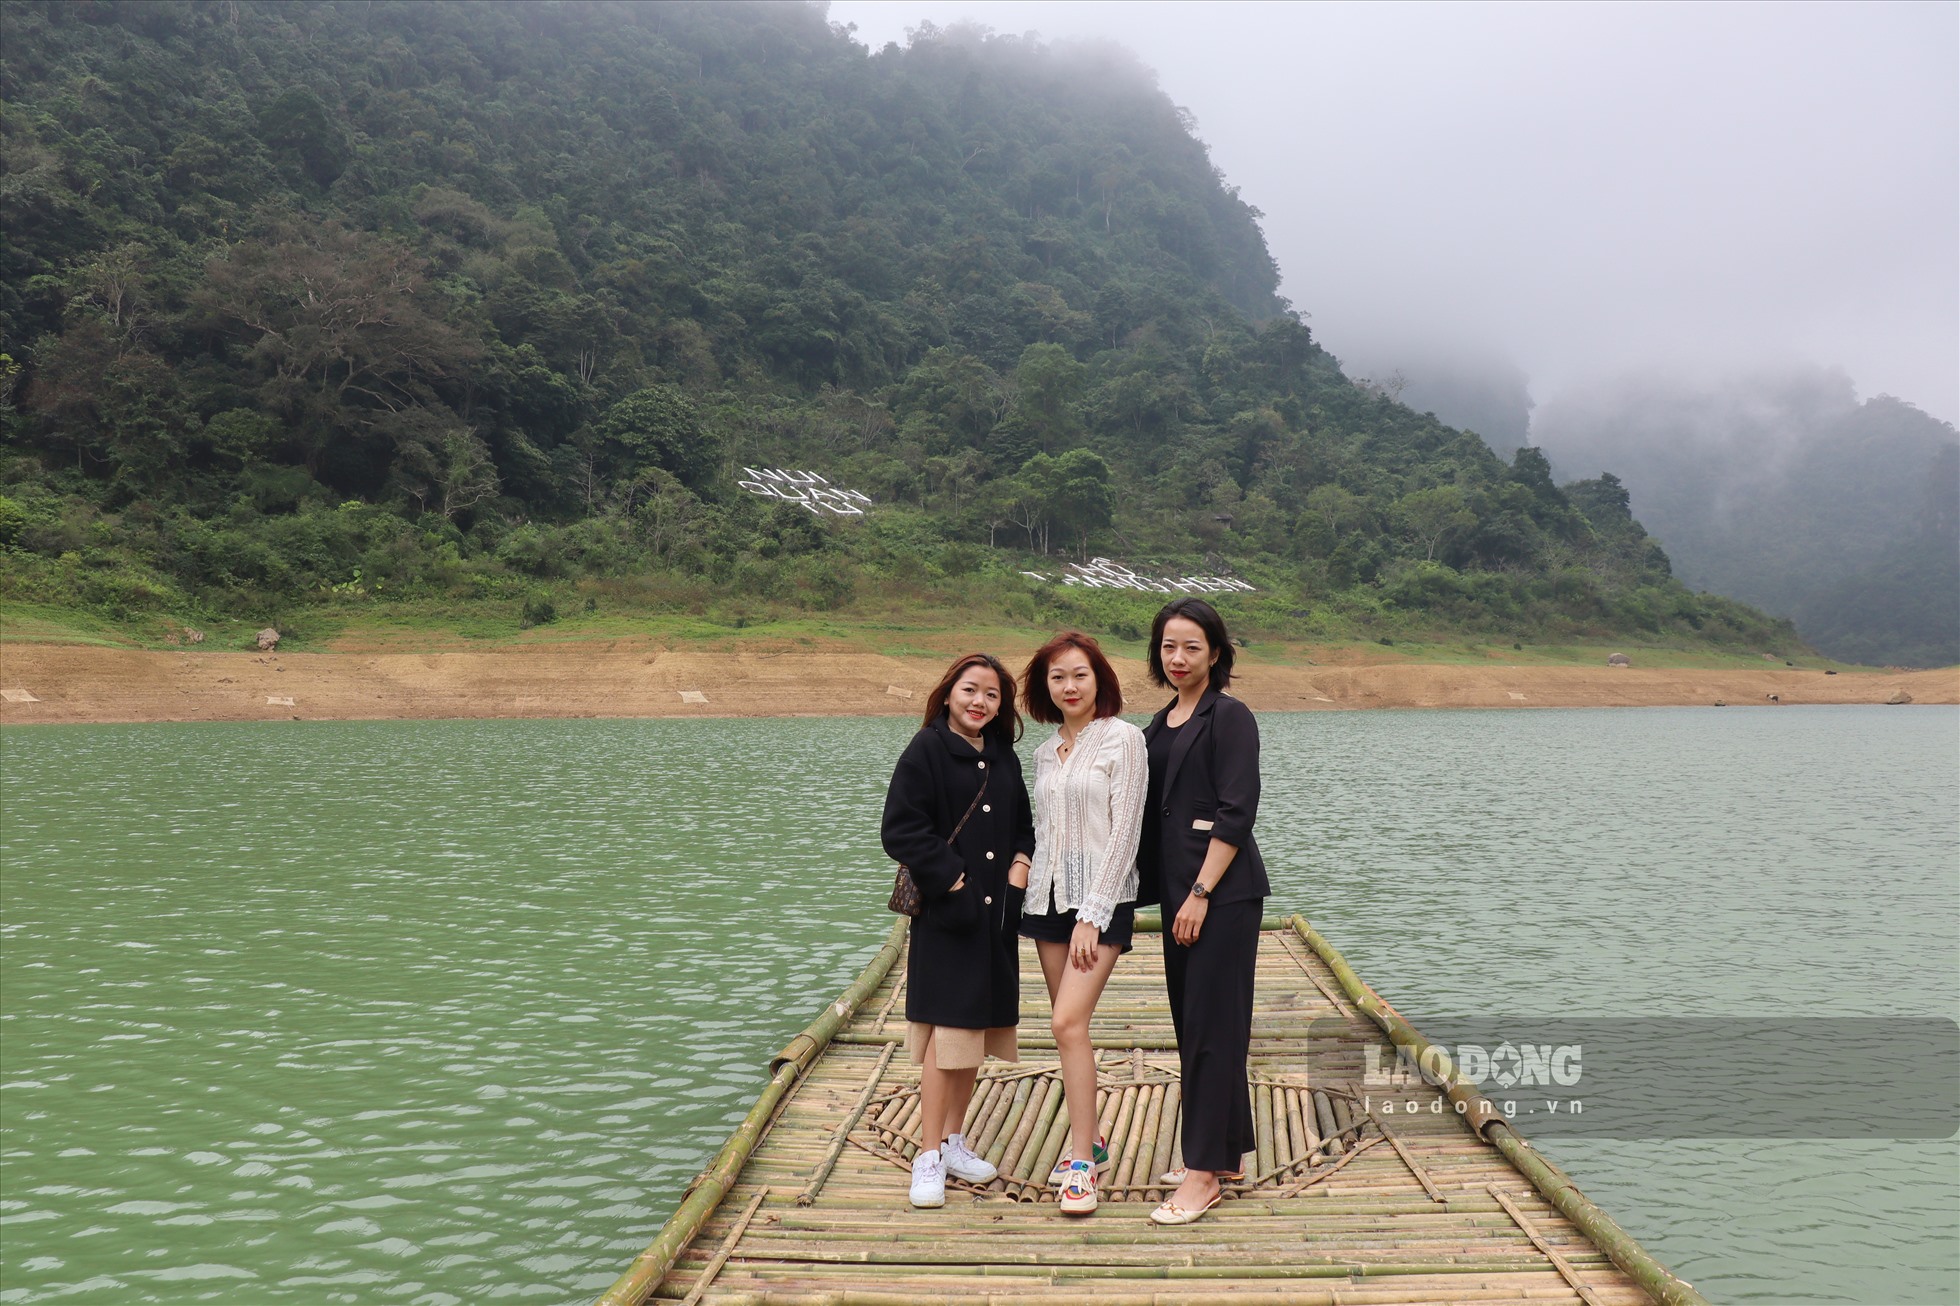 Hồ Thang Hen: Khung cảnh hữu tình, tuyệt đẹp với đầm nước trong xanh và những ngọn núi bao quanh. Hãy xem hình ảnh để chiêm ngưỡng vẻ đẹp tự nhiên tuyệt vời của Hồ Thang Hen.